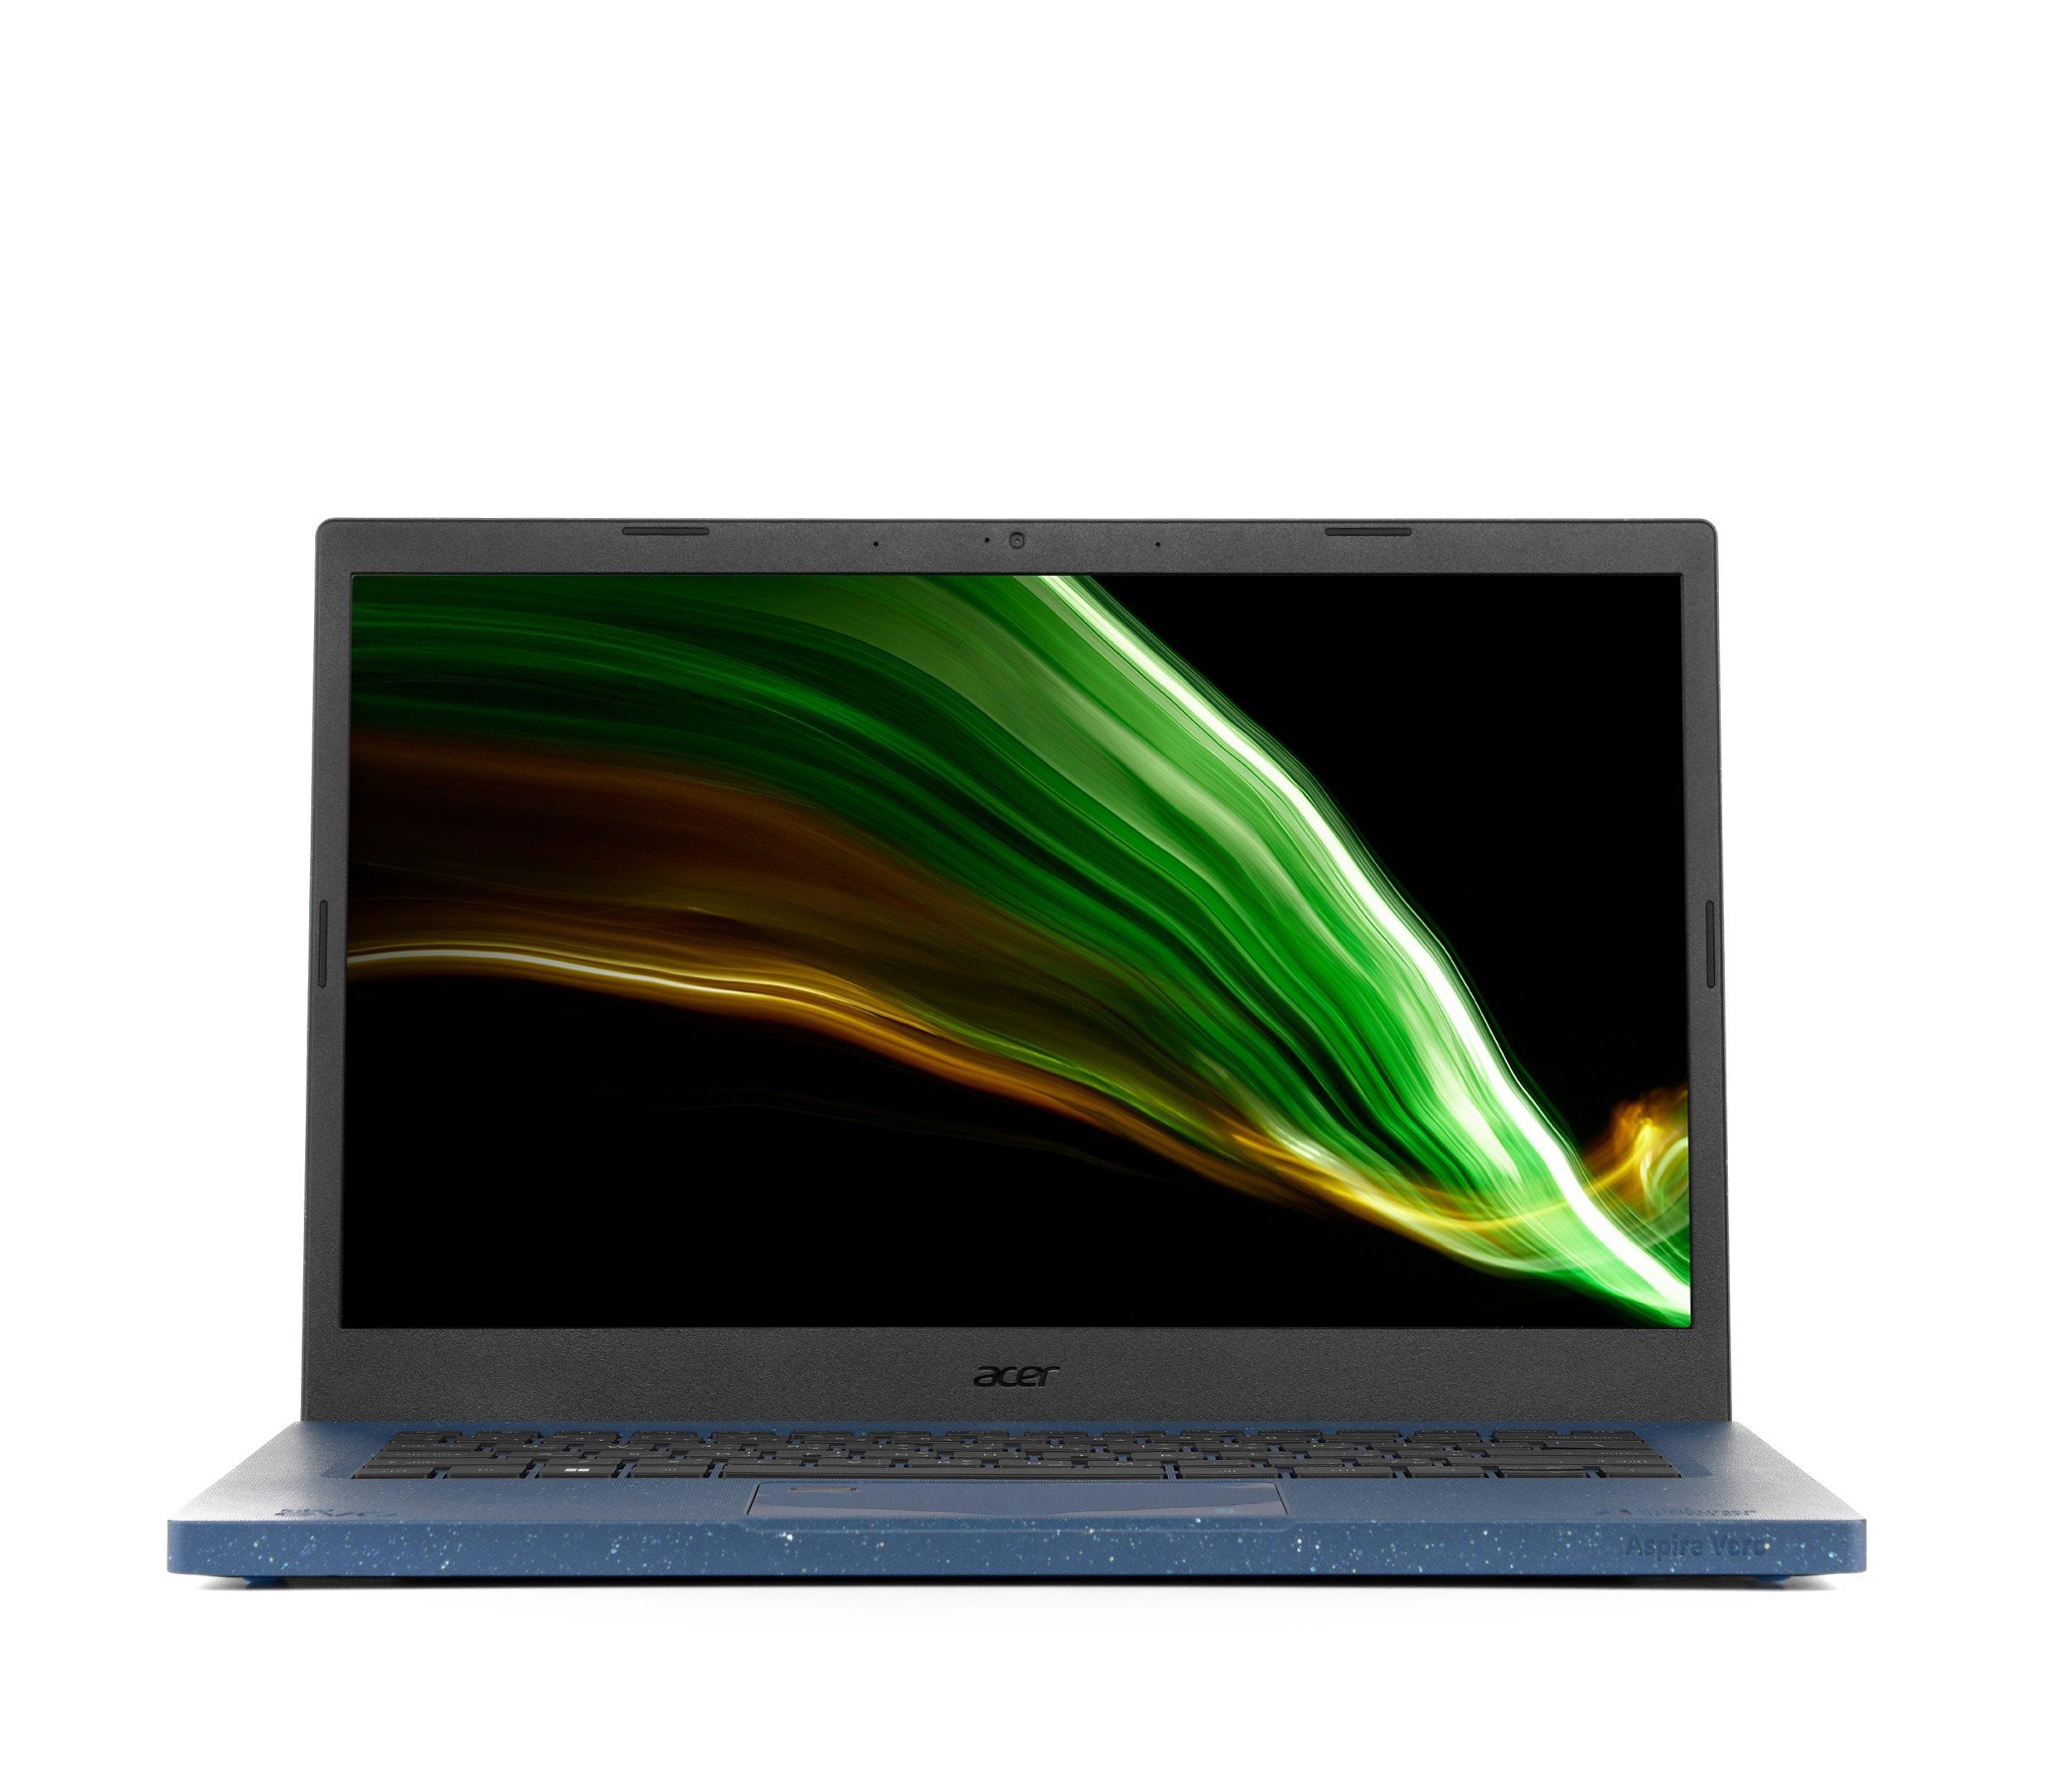 Intel core i5 ноутбук отзывы. Acer a715-42g. Ноутбук игровой Acer Aspire 7 a715-42g-r44j (NH.qdler.004). Acer Aspire 5 a515-56-52mv. Acer Aspire 1 a114-33-p7vd.